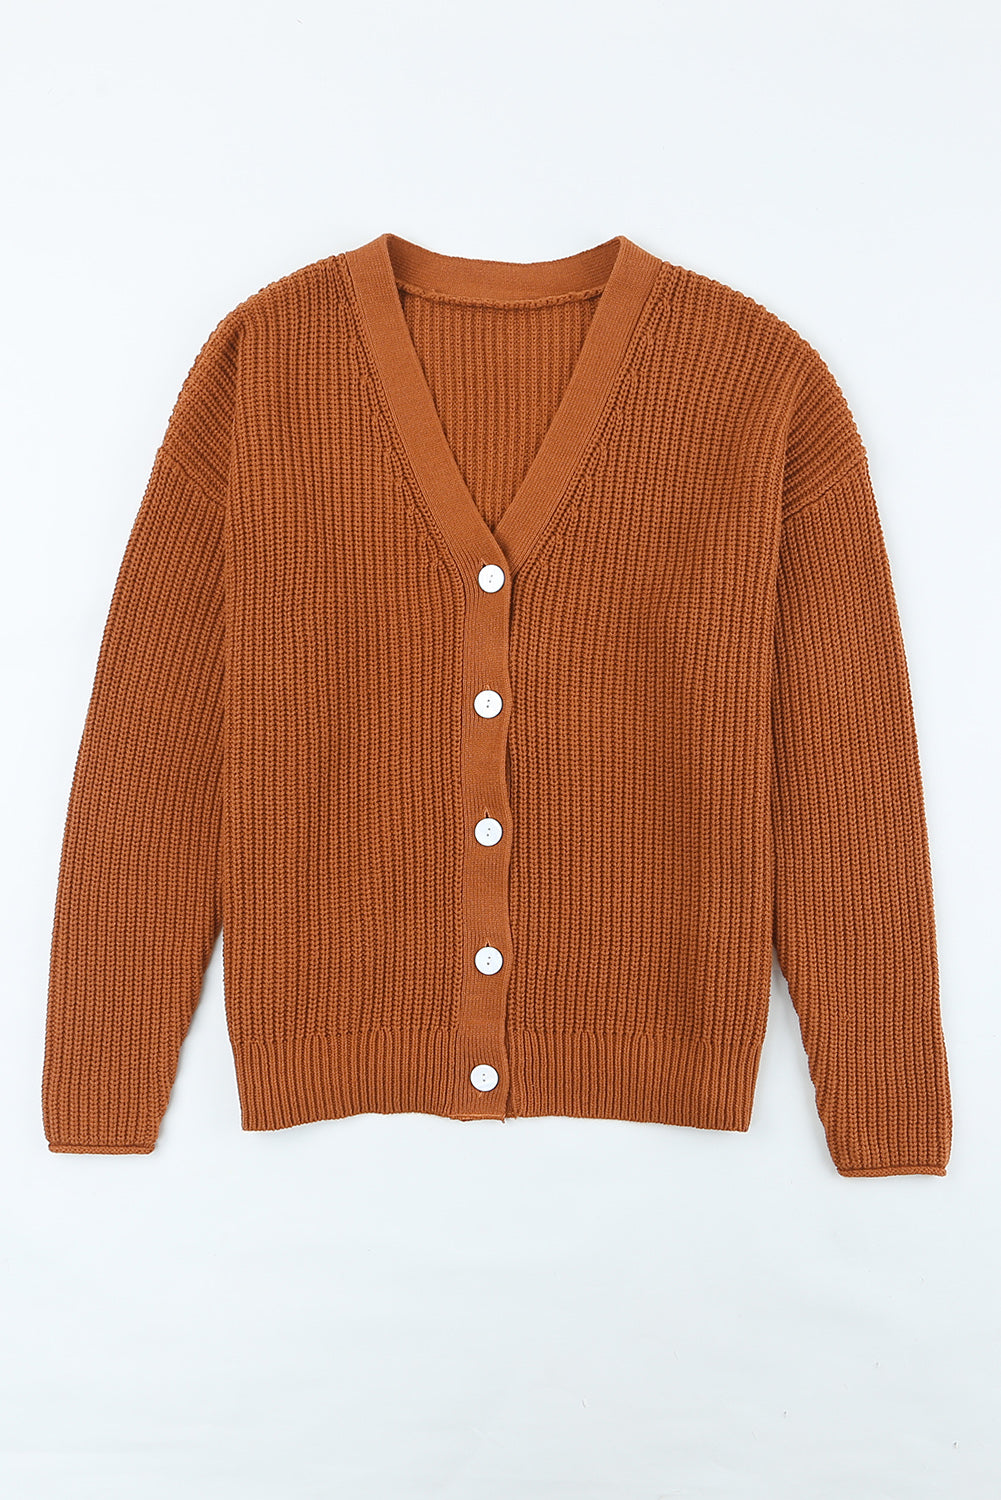 Brown V Neck Drop Shoulder Buttons Cardigan Sweaters & Cardigans JT's Designer Fashion